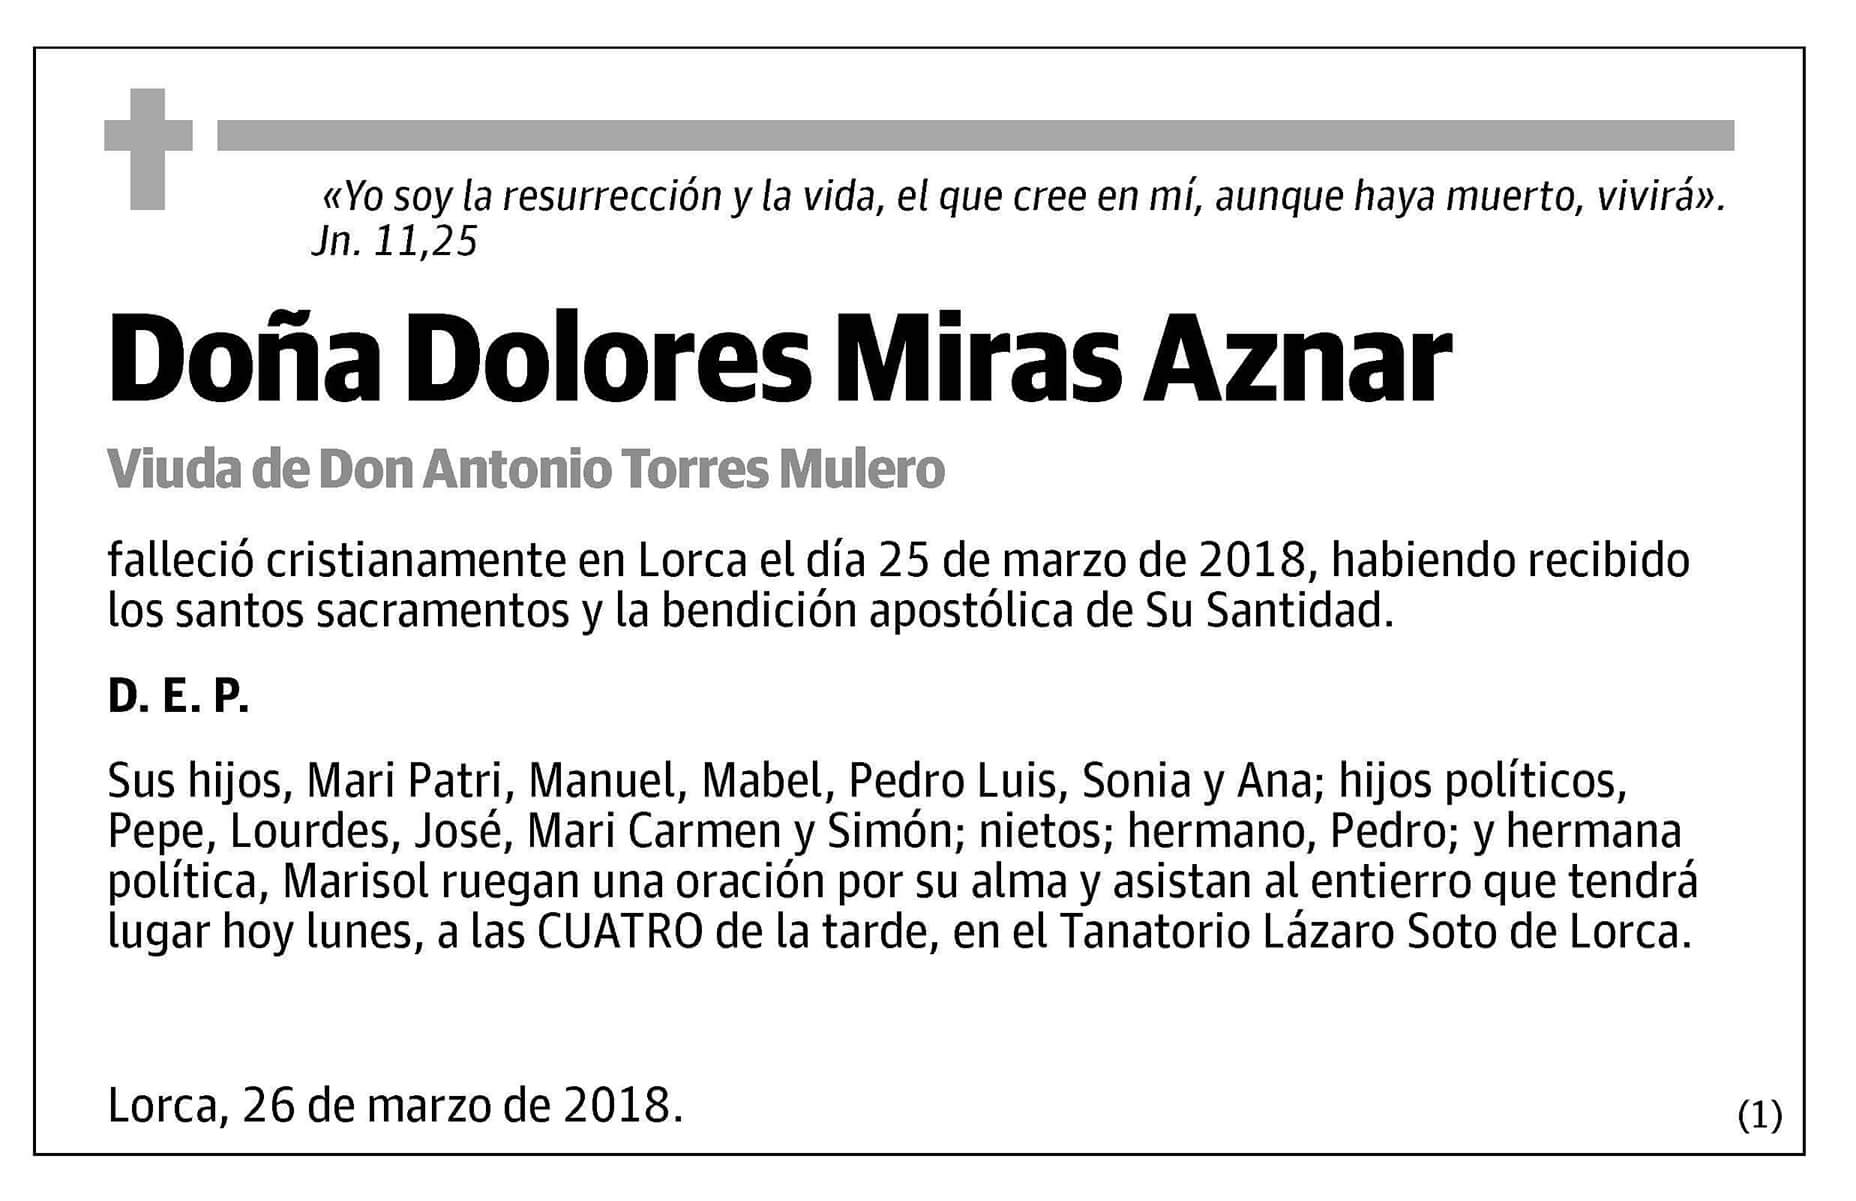 Dolores Miras Aznar